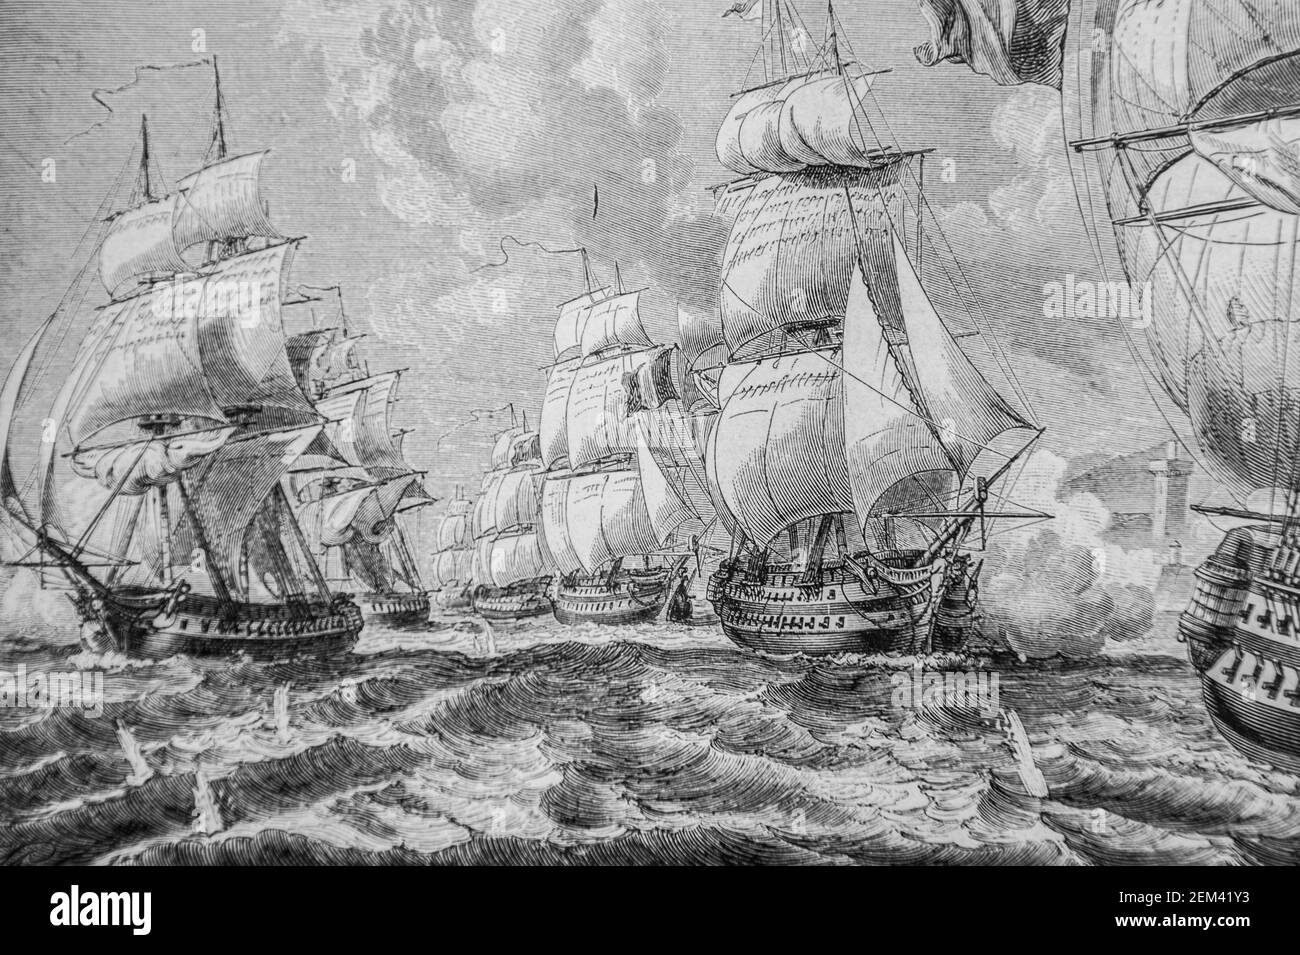 l'amiral roussin avec son escadre force l'entree du tage, 1804-1832 histoire de france por henri martin, editeur furne 1880 Foto de stock